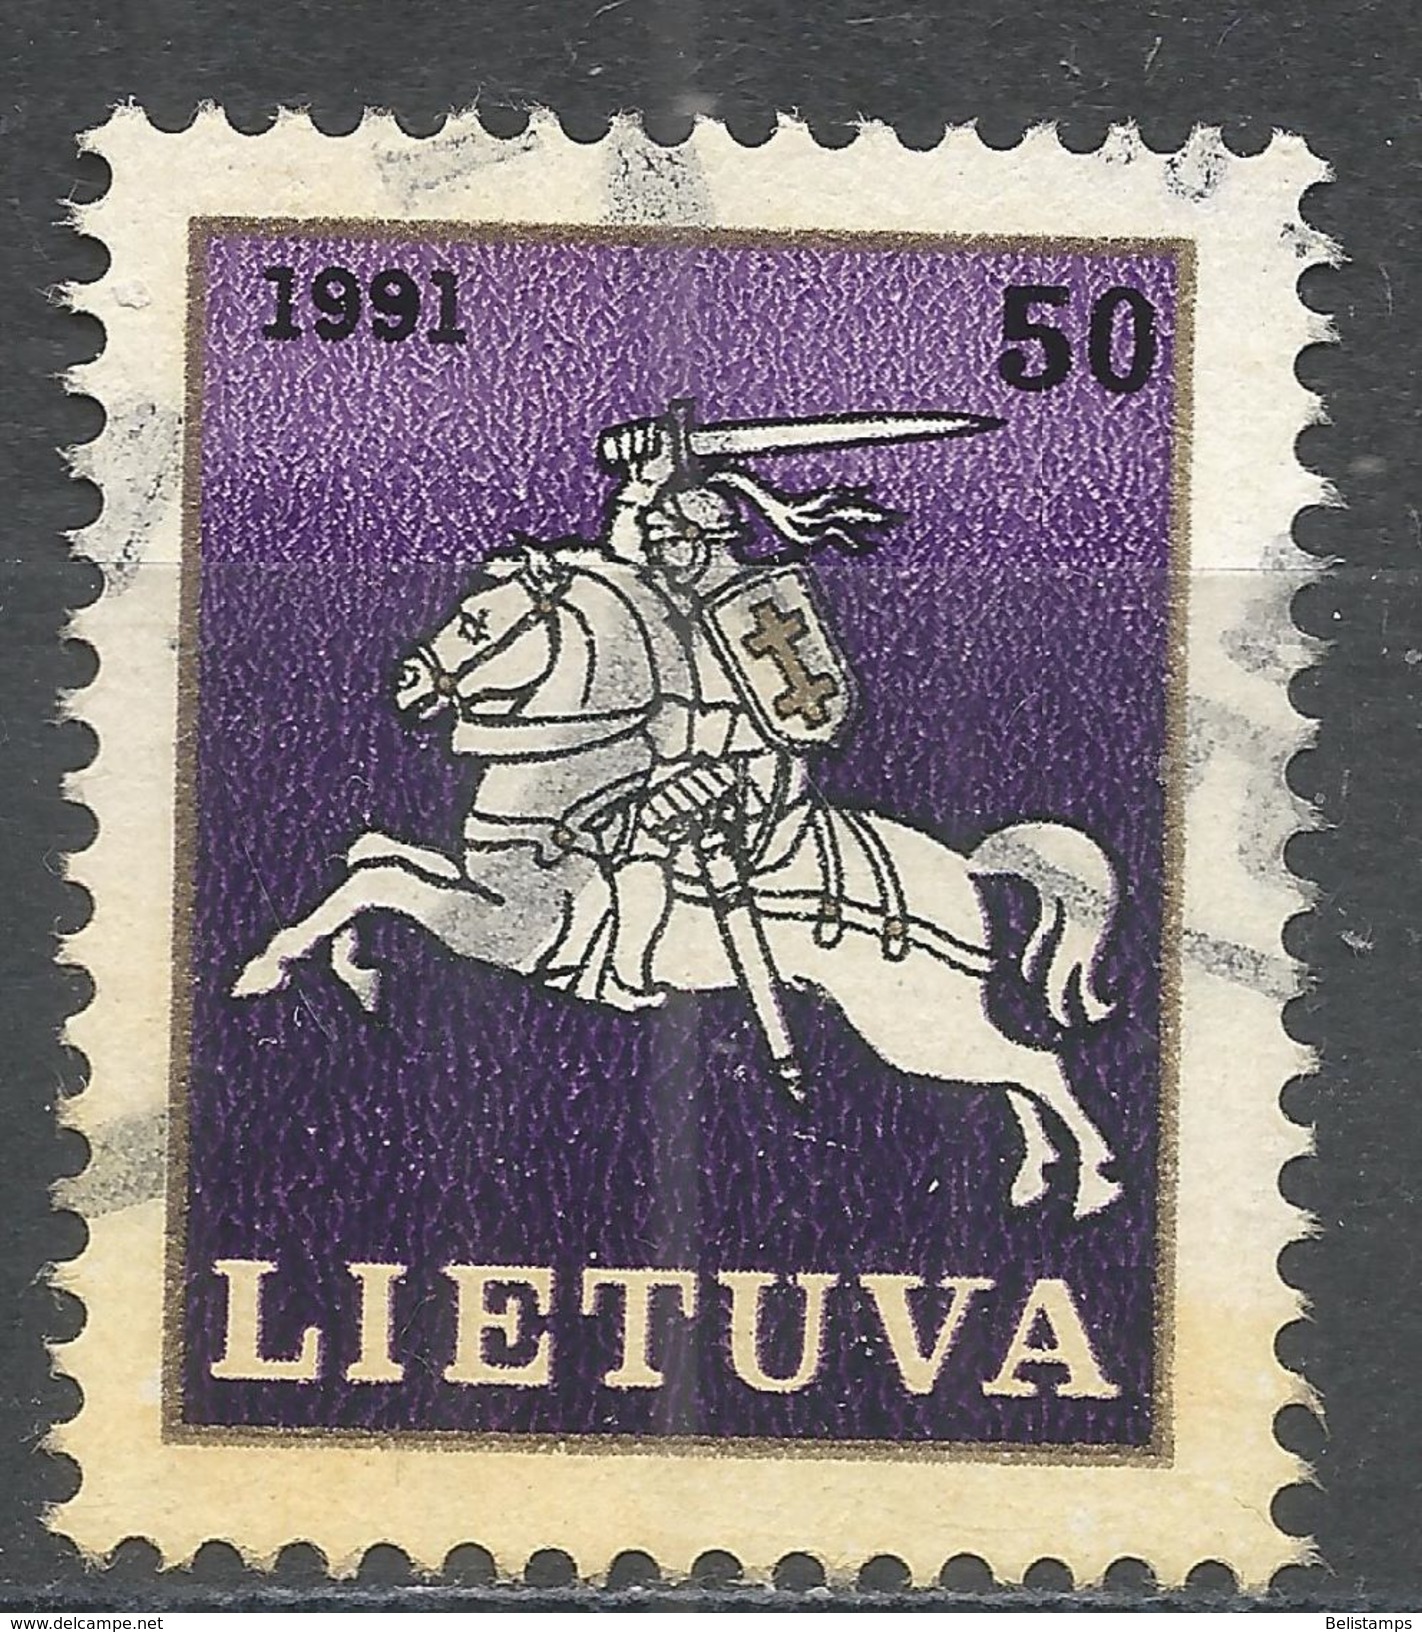 Lithuania 1991. Scott #383 (U) White Knight ''Vytis'', Chevalier - Lituanie